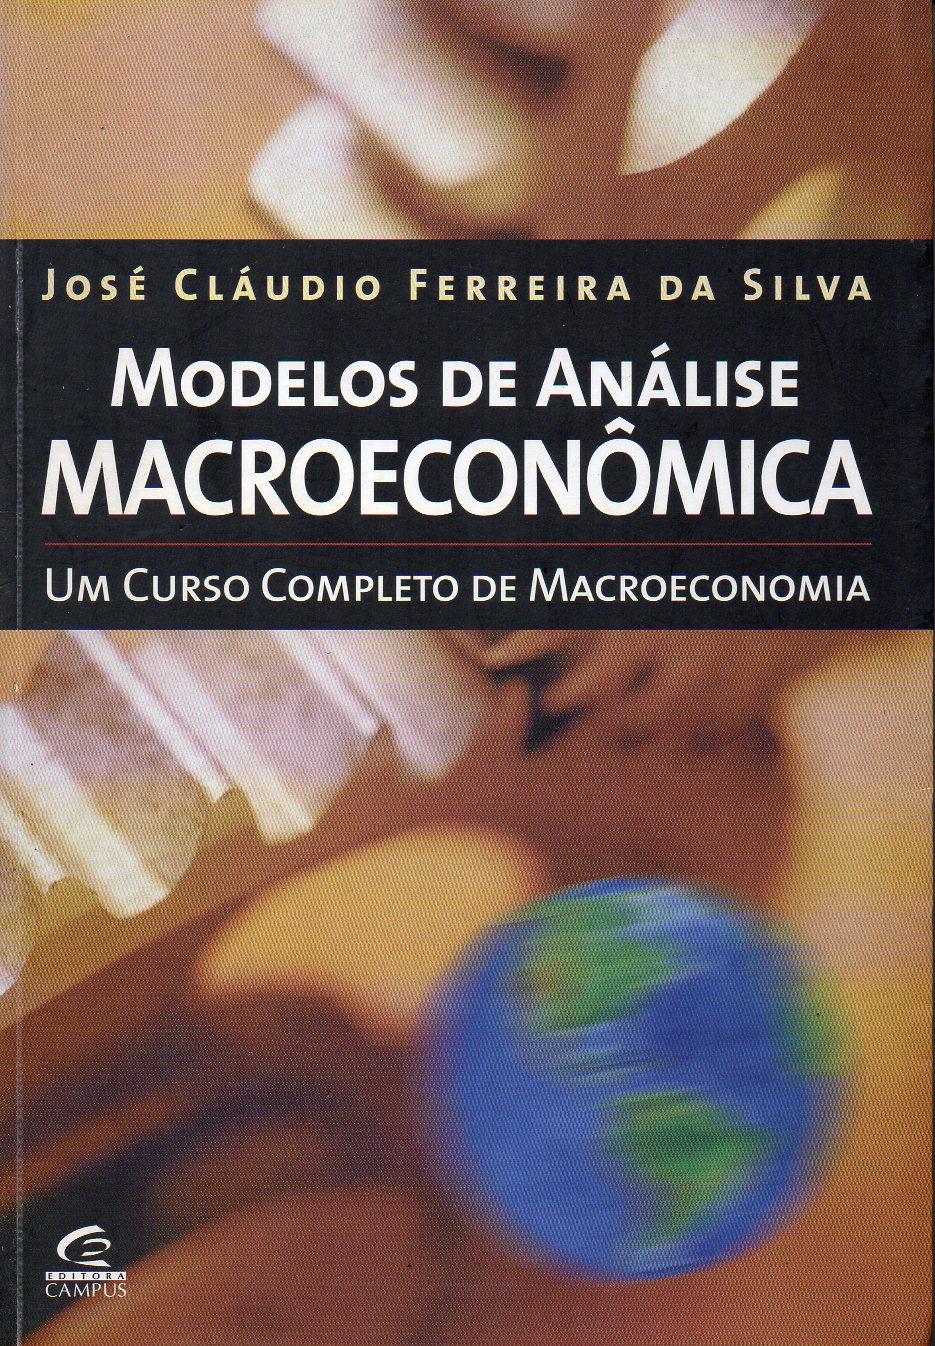 65 Exercícios SILVA, José Claudio Ferreira da. Modelos de análise macroeconômica: um curso completo de macroeconomia.